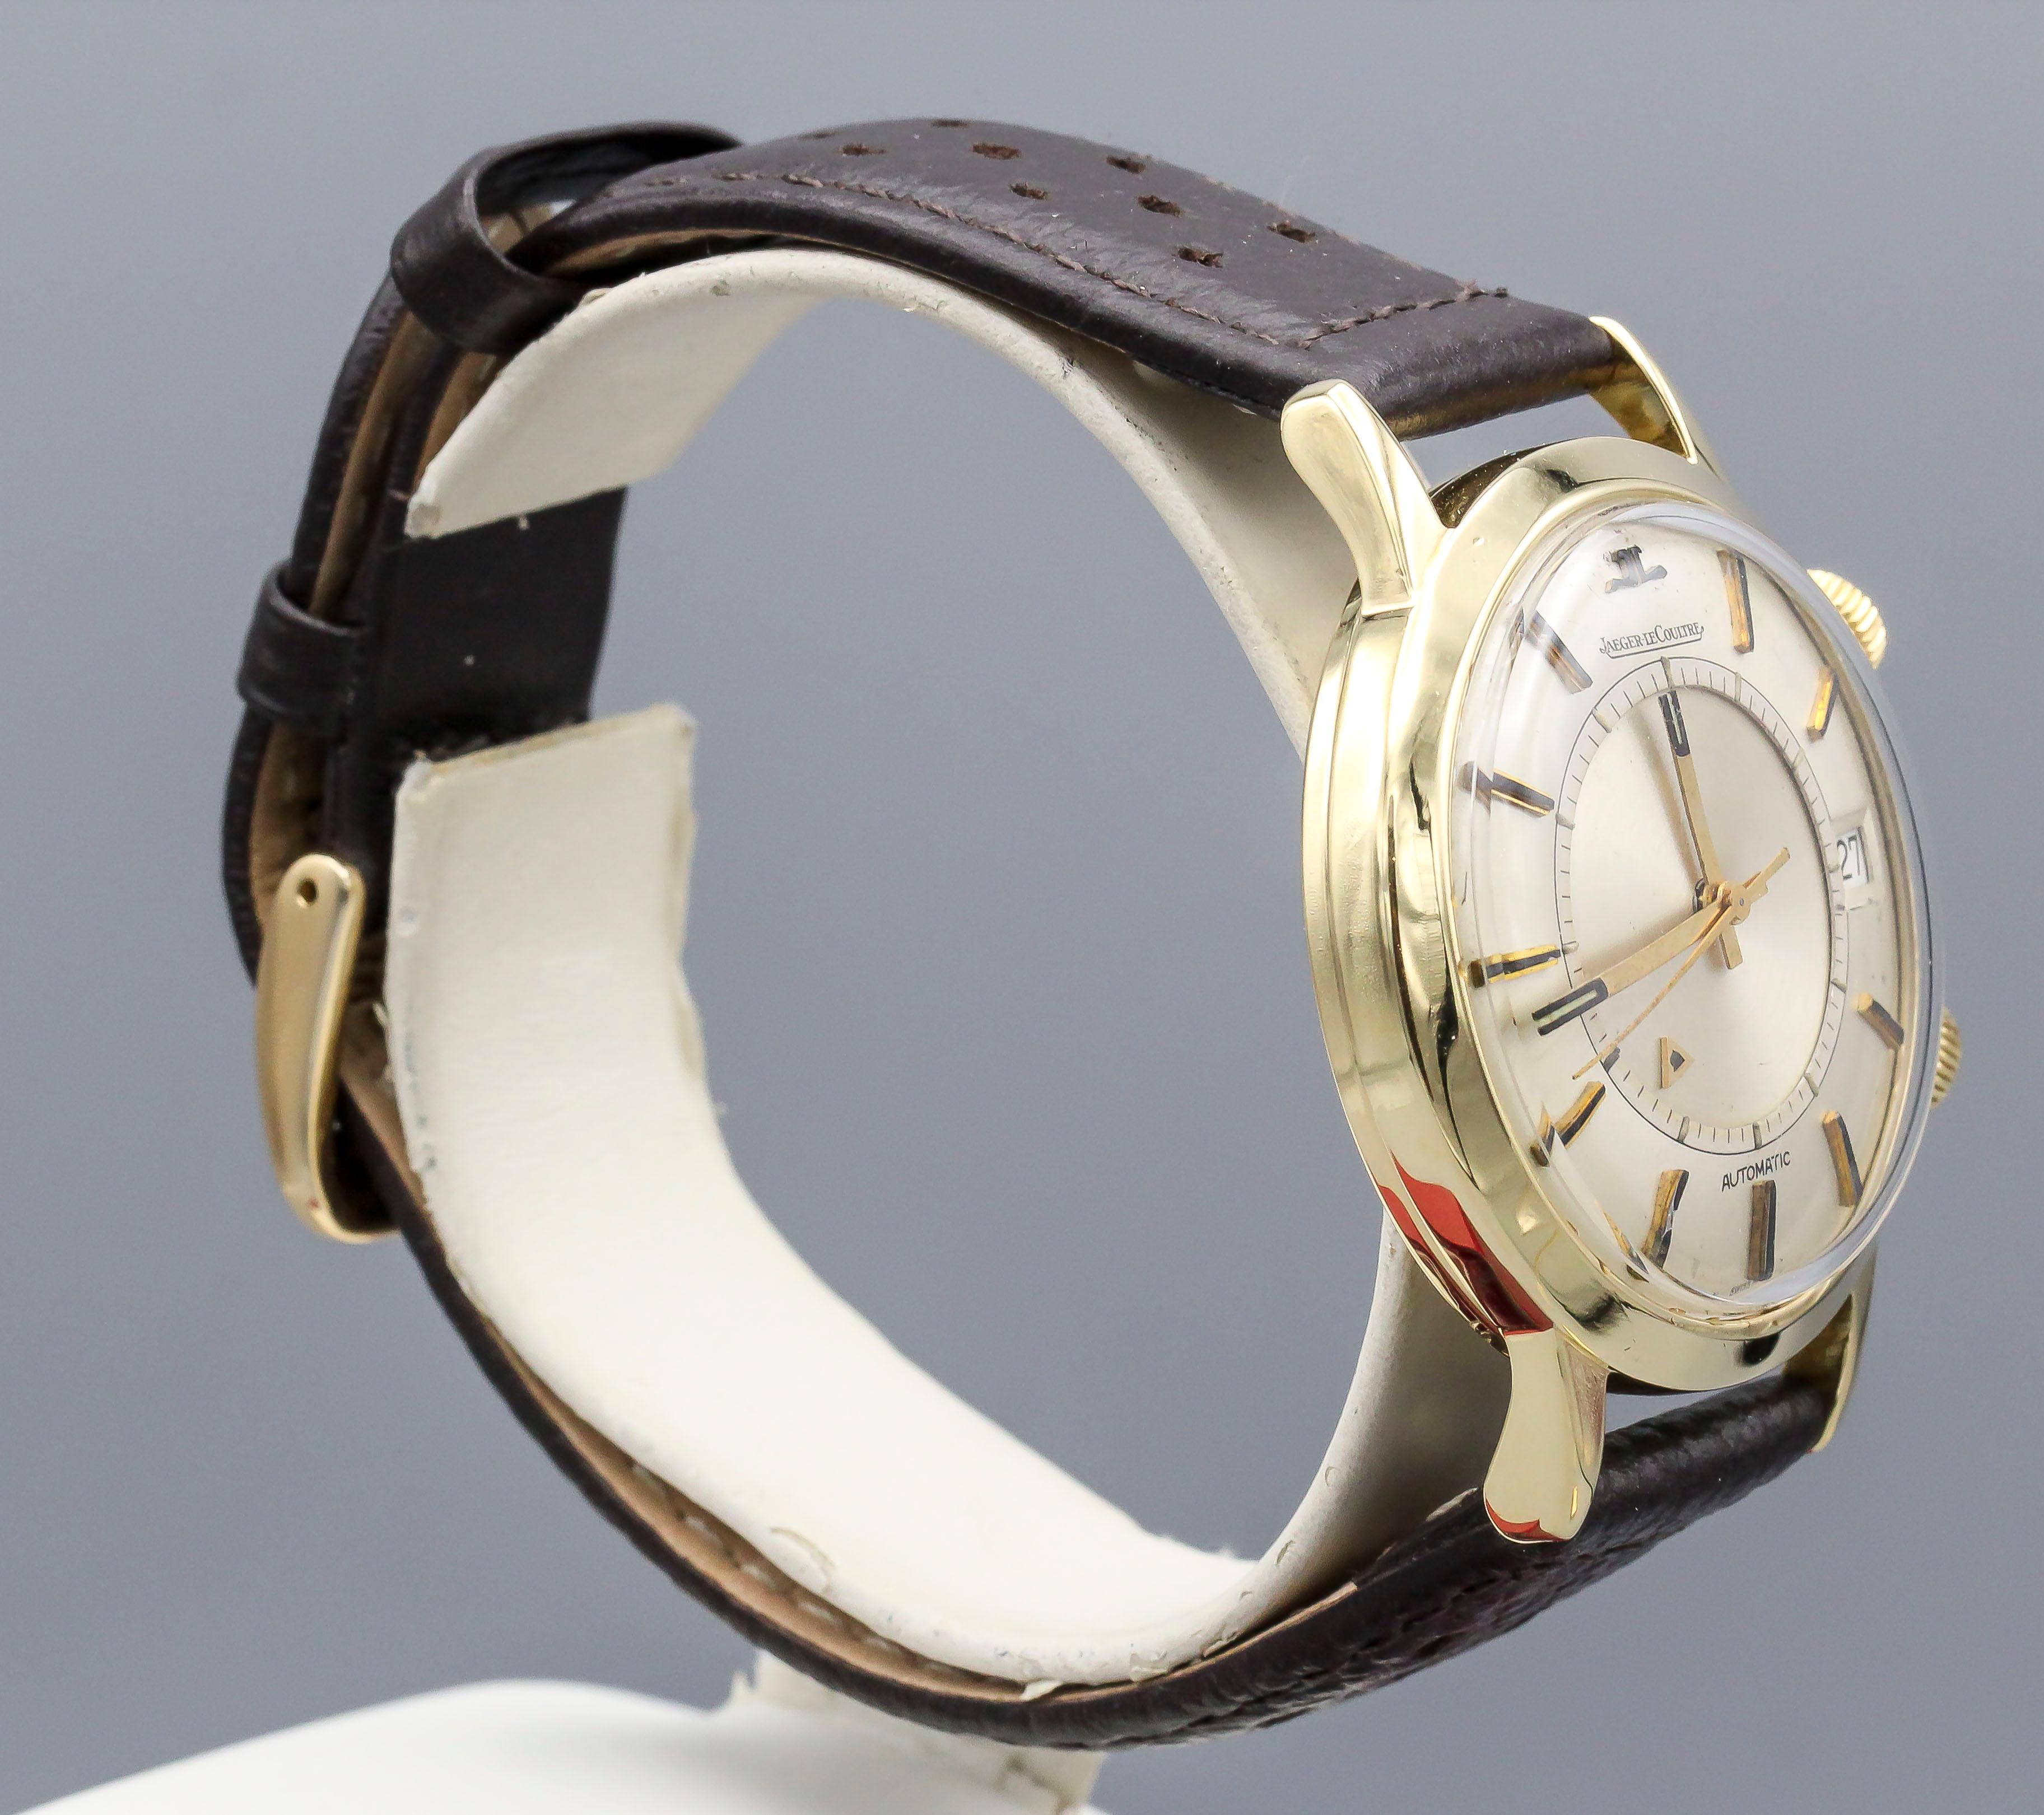 Belle montre-bracelet Jaeger-LeCoultre Memovox en or jaune 18 carats. Elle est dotée d'un mouvement automatique et d'une fonction d'alarme. Elle est plus rare que ses homologues en or, en raison de ses index en émail, de son boîtier en or massif 18